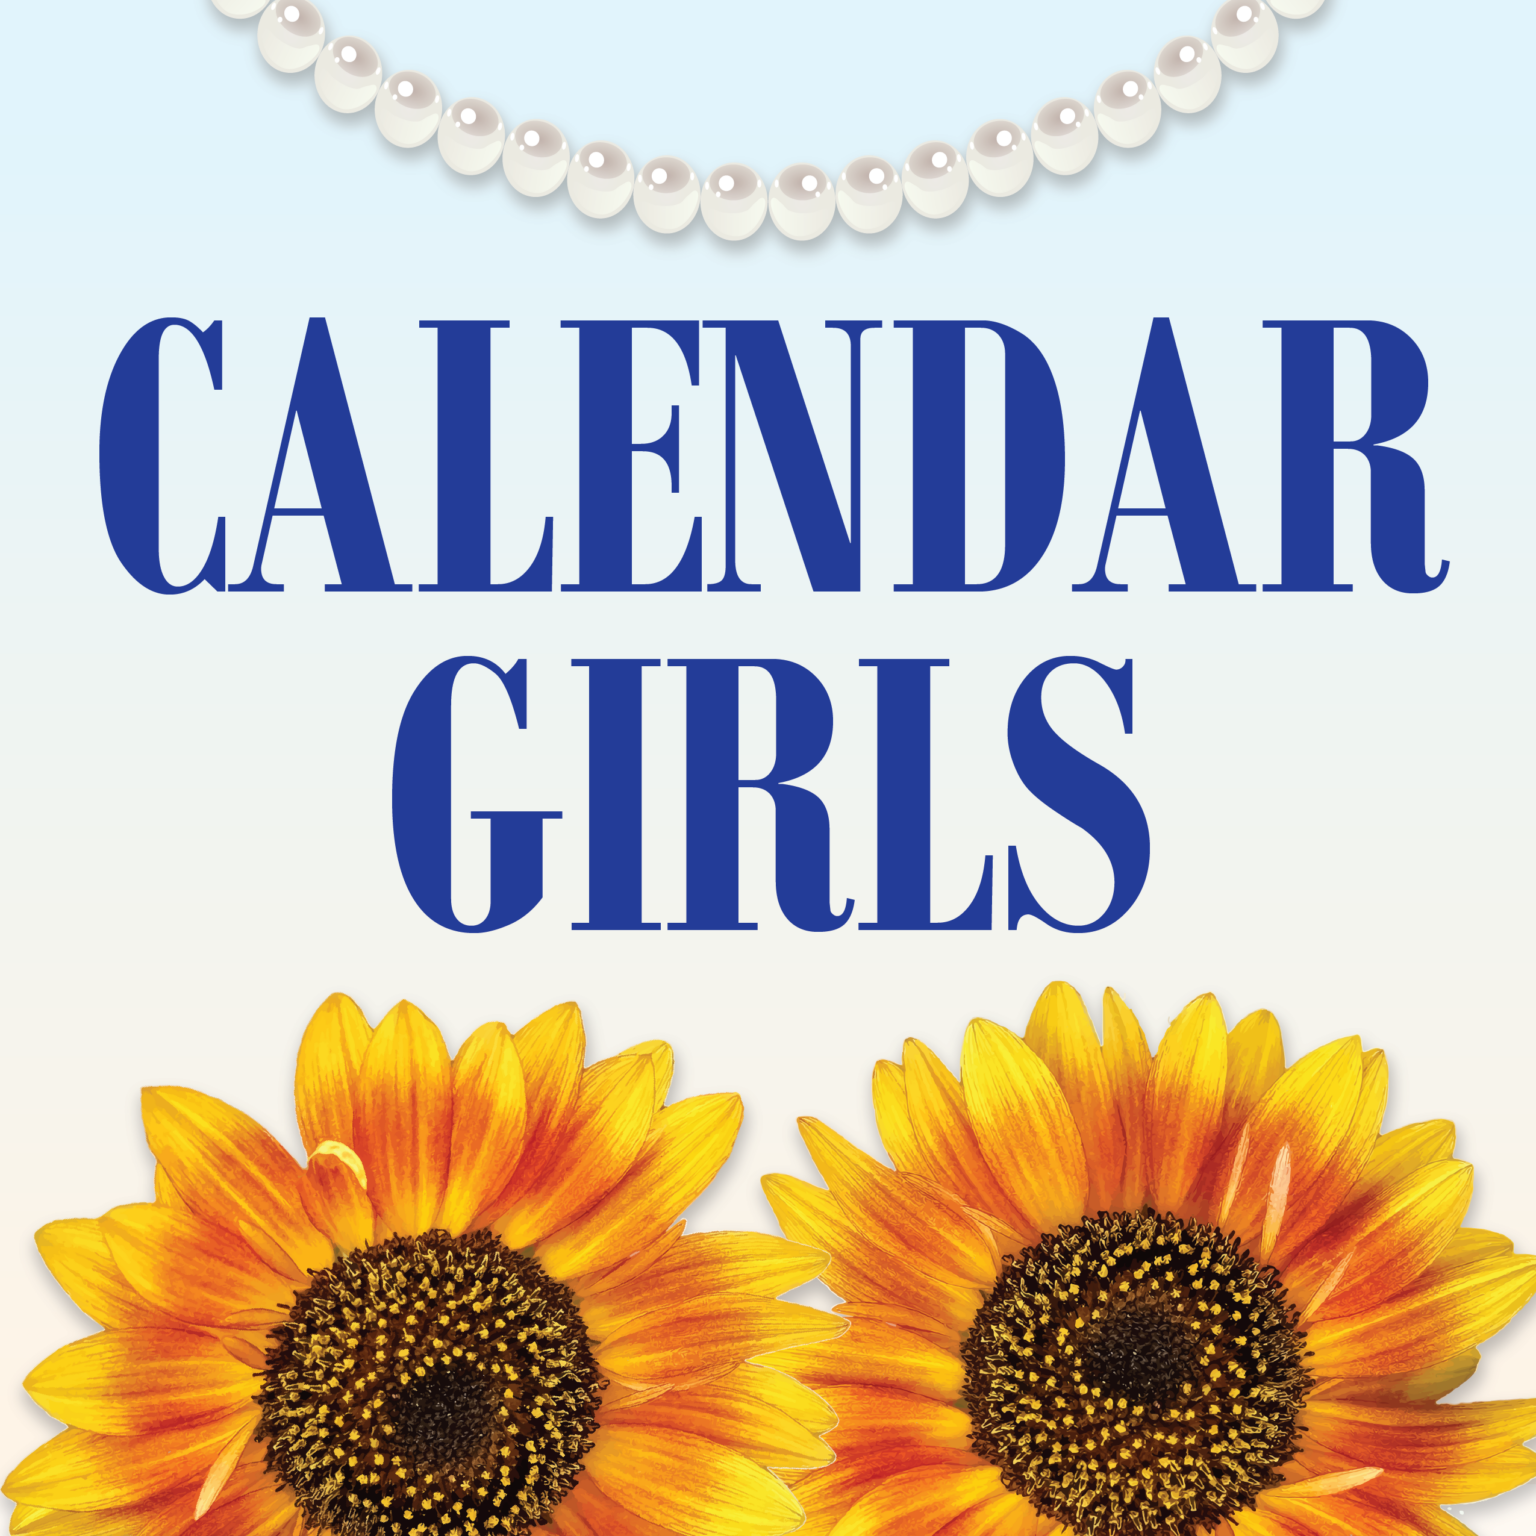 Audition calendar girls 